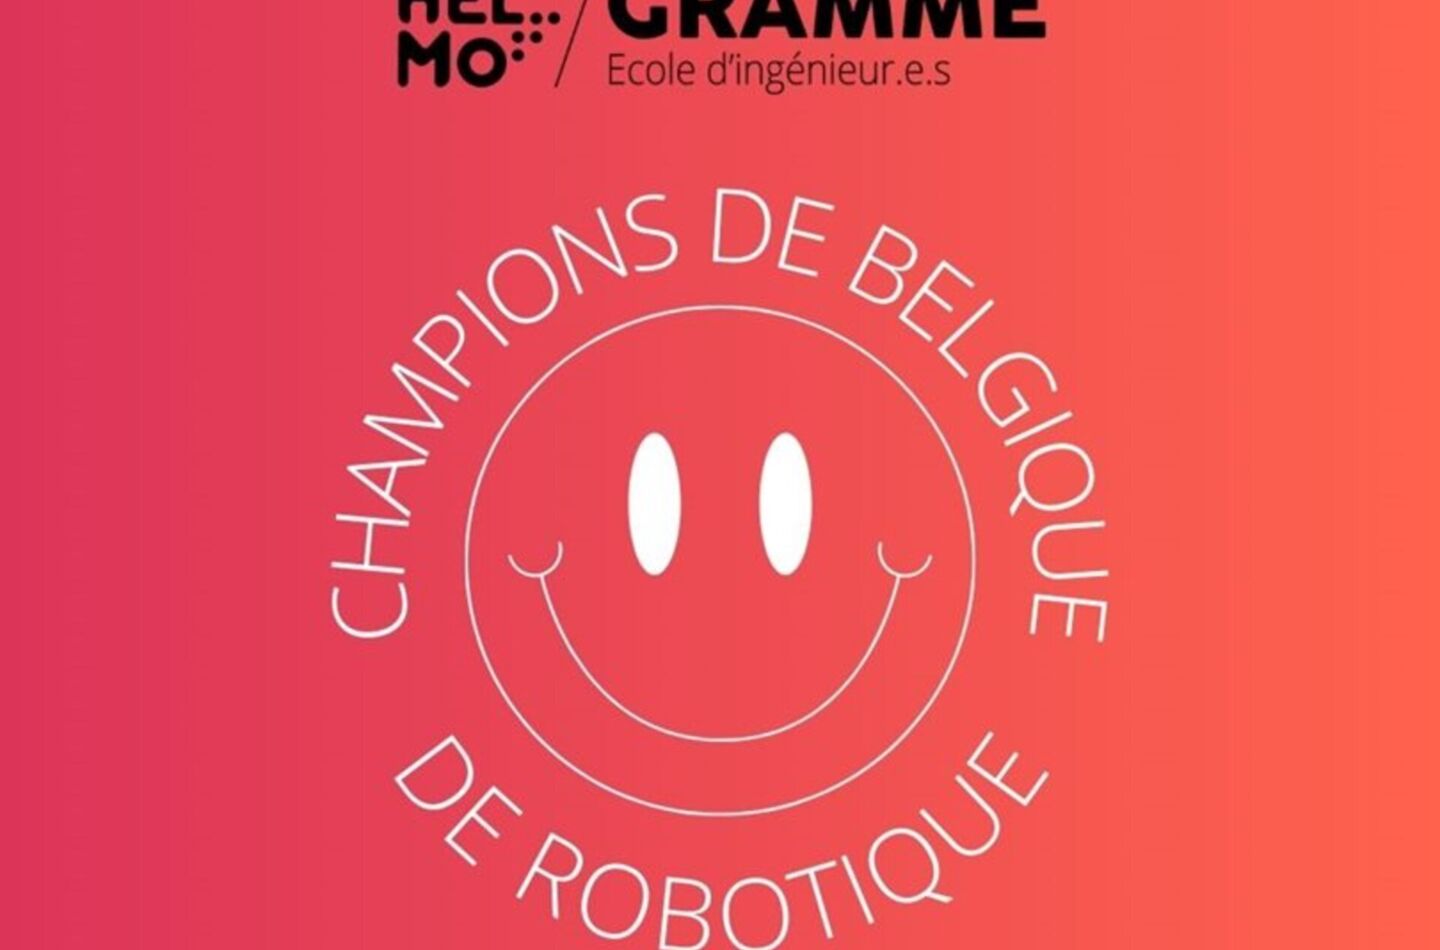 HELMO GRAMME CHAMPIONNE DE BELGIQUE DE ROBOTIQUE 1